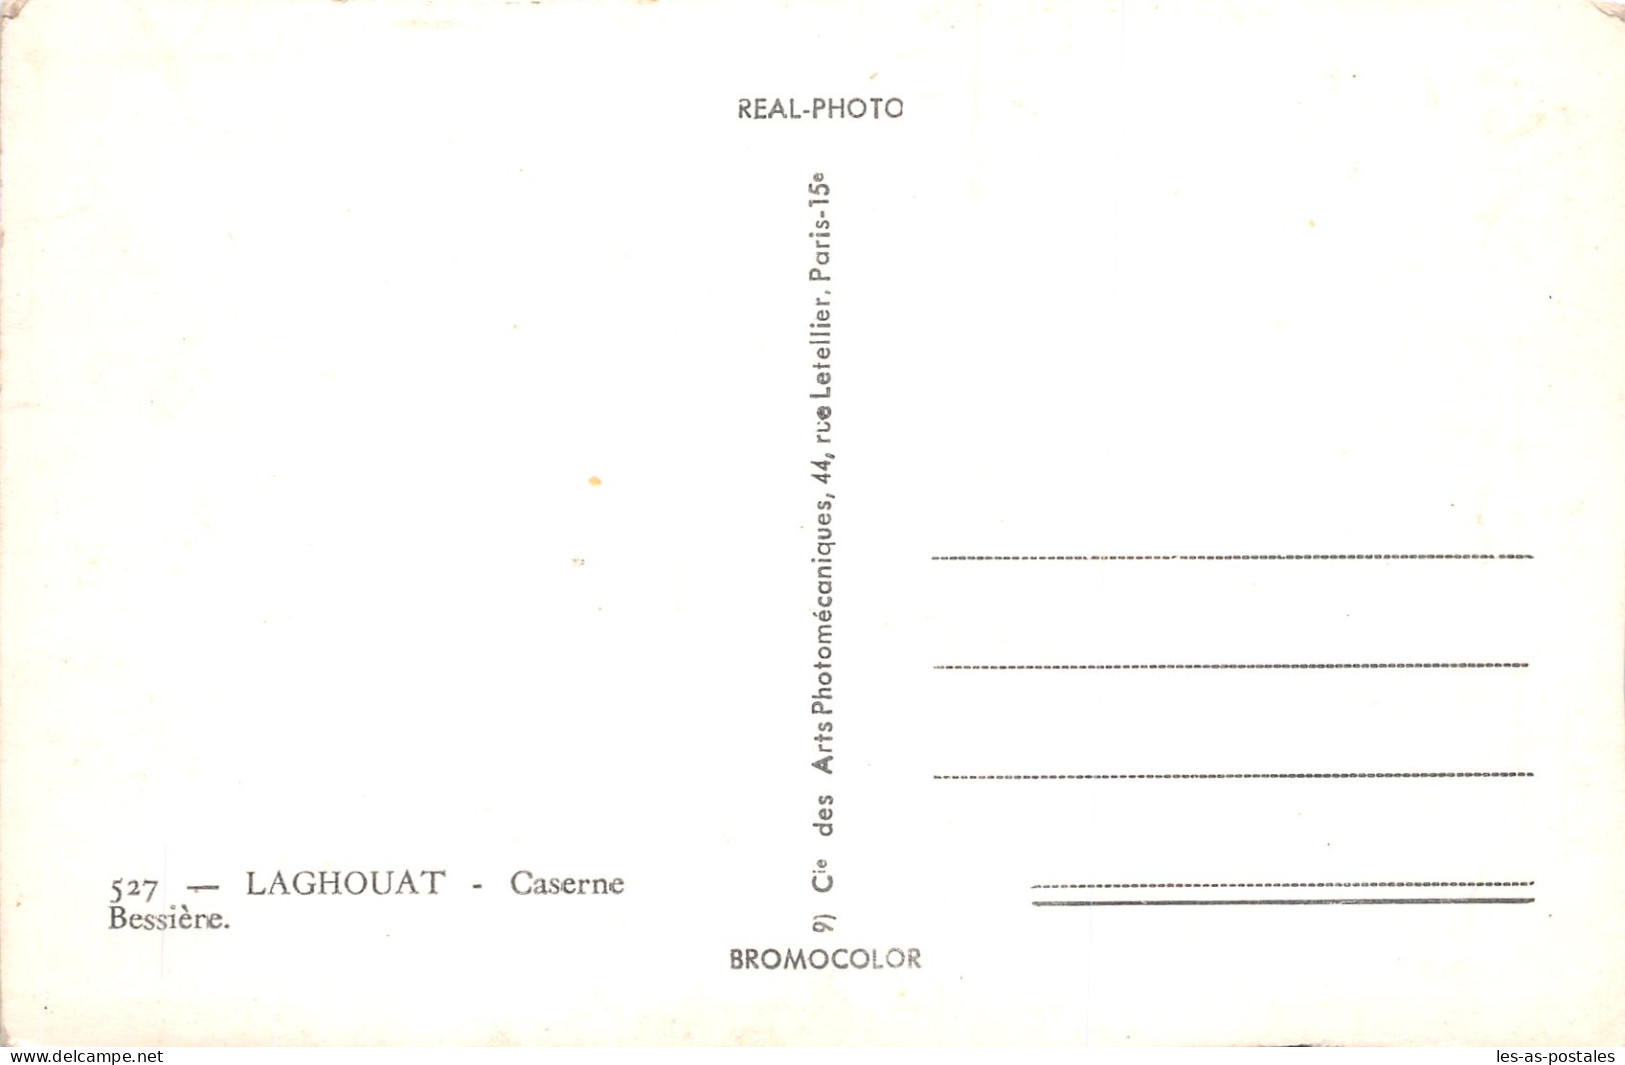 ALGERIE LAGHOUAT - Laghouat